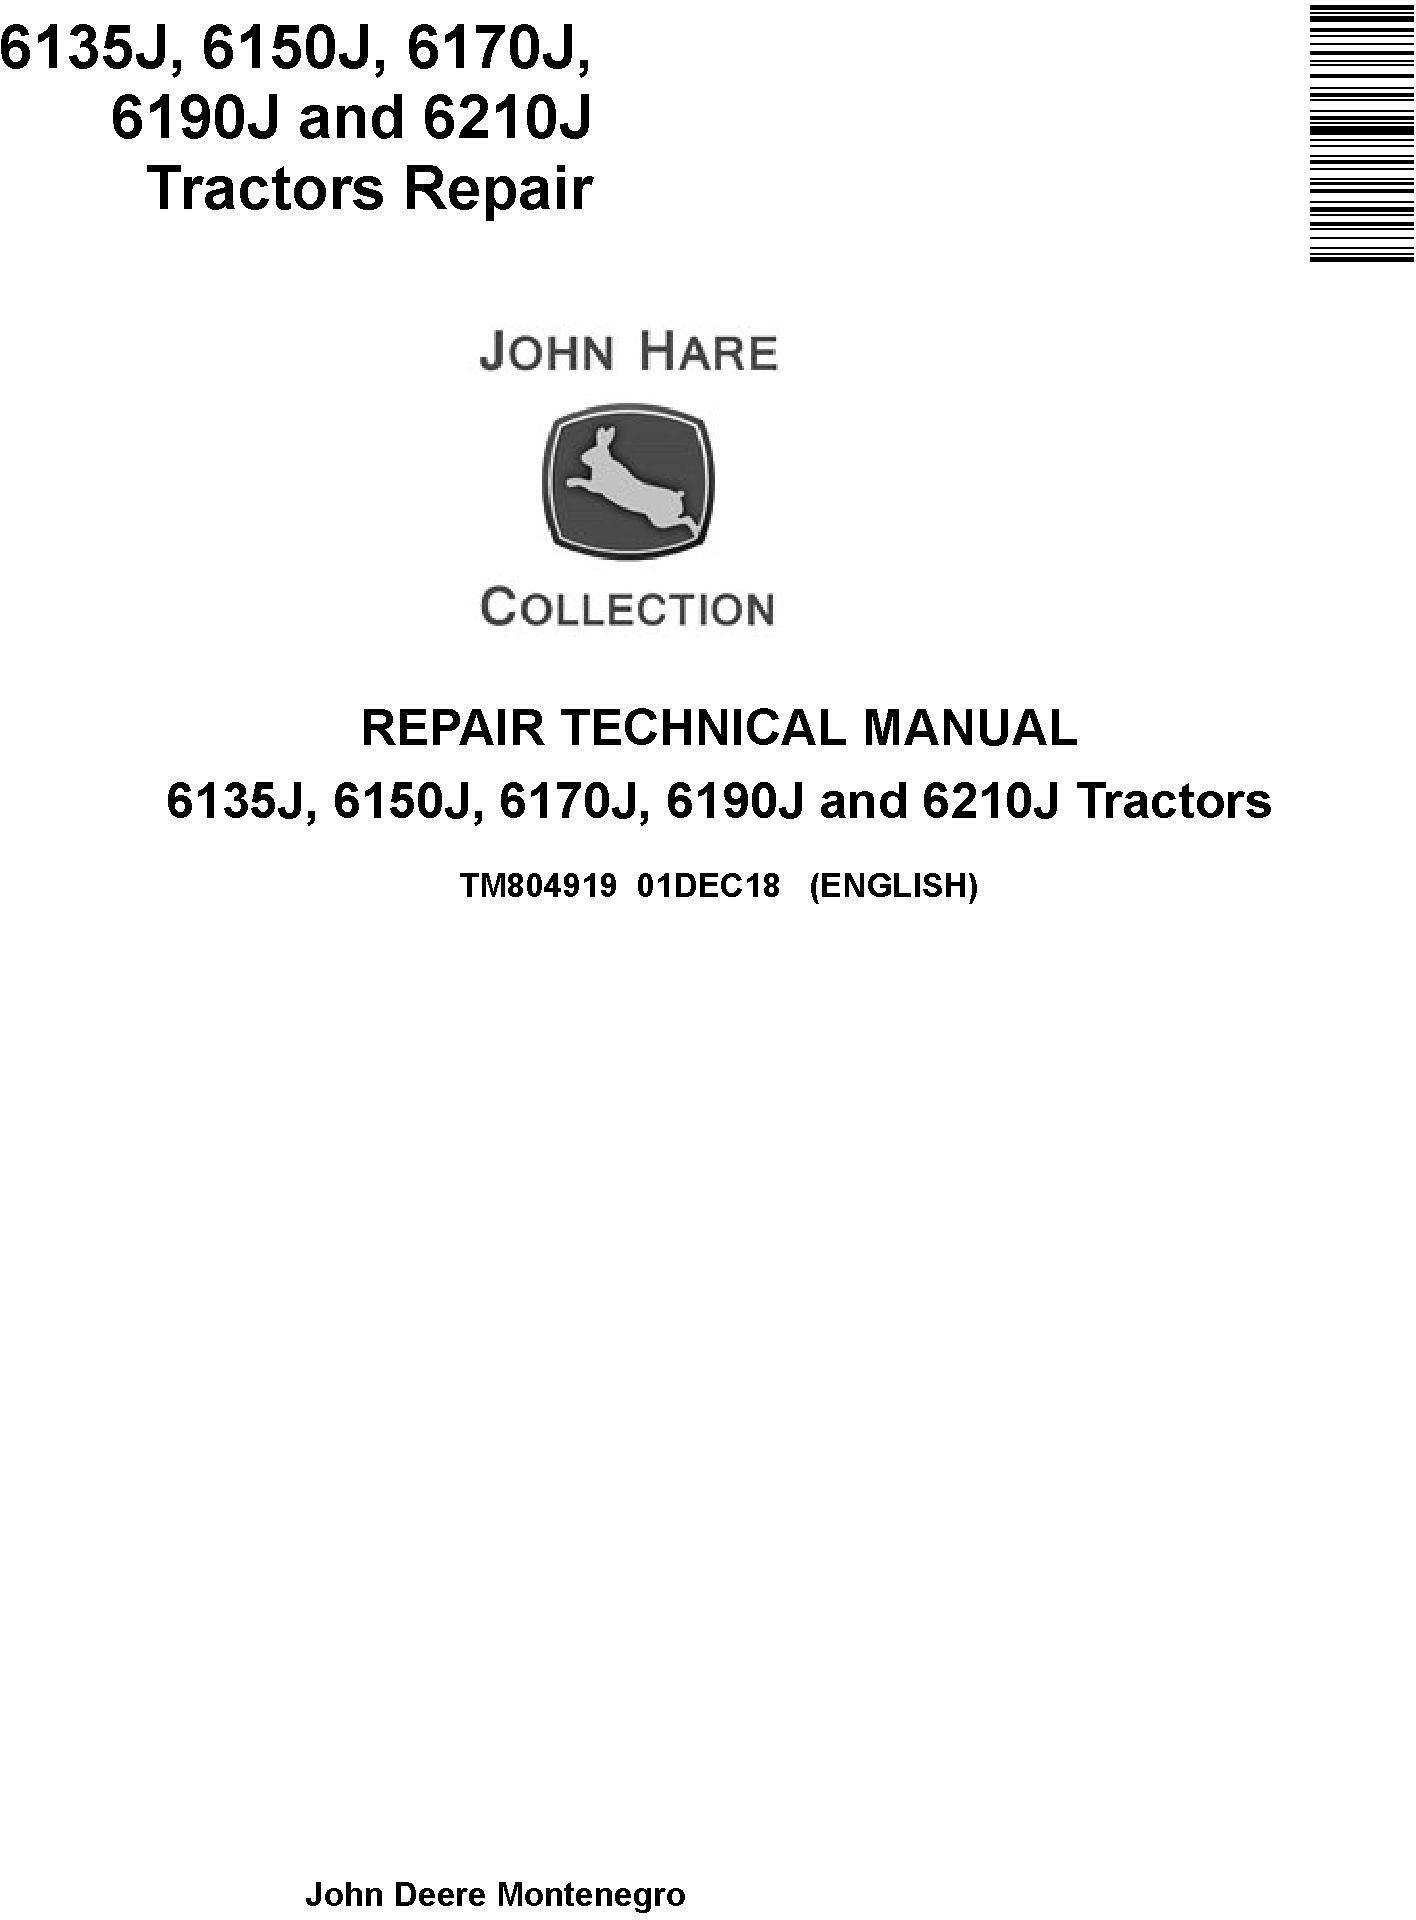 John Deere 6135J to 6210J Tractor Repair Technical Manual TM804919